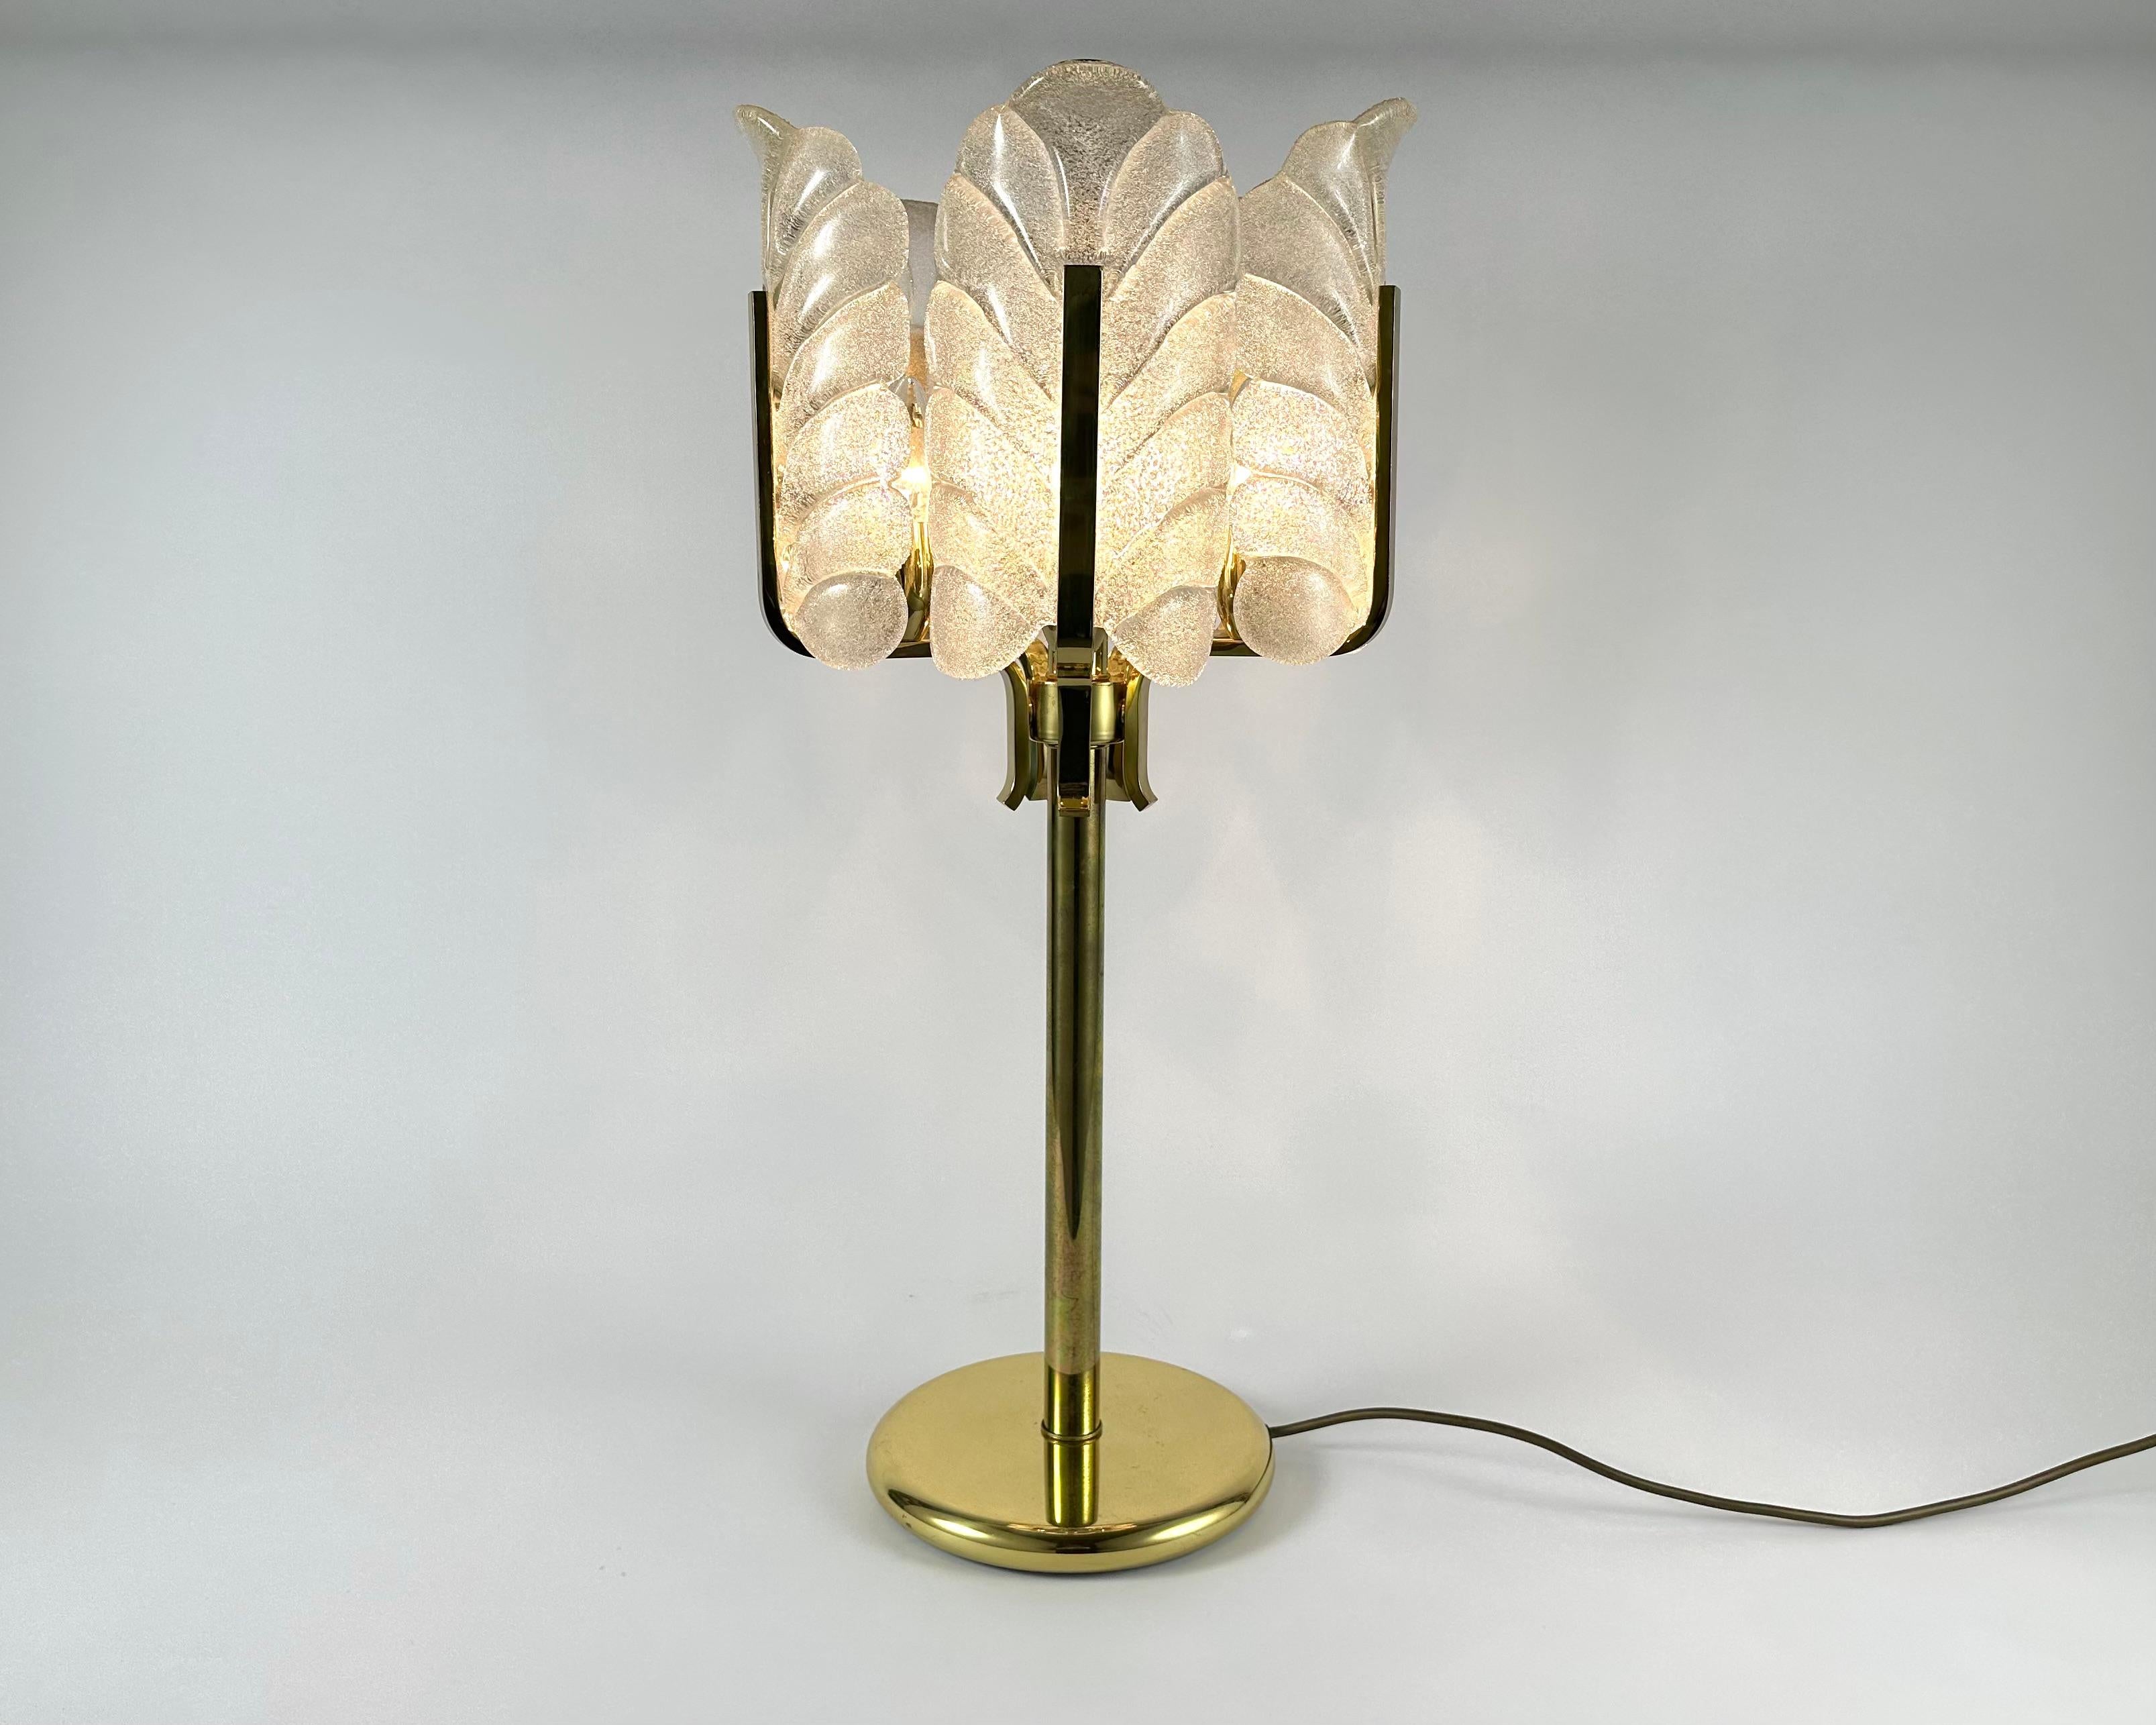 Cette lampe de table sculpturale de style Hollywood regency a été conçue par Carl Fagerlund pour la société suédoise de verrerie Orrefors Lighting dans les années 1960.

La lampe est composée d'un cadre en laiton brillant et de cinq feuilles